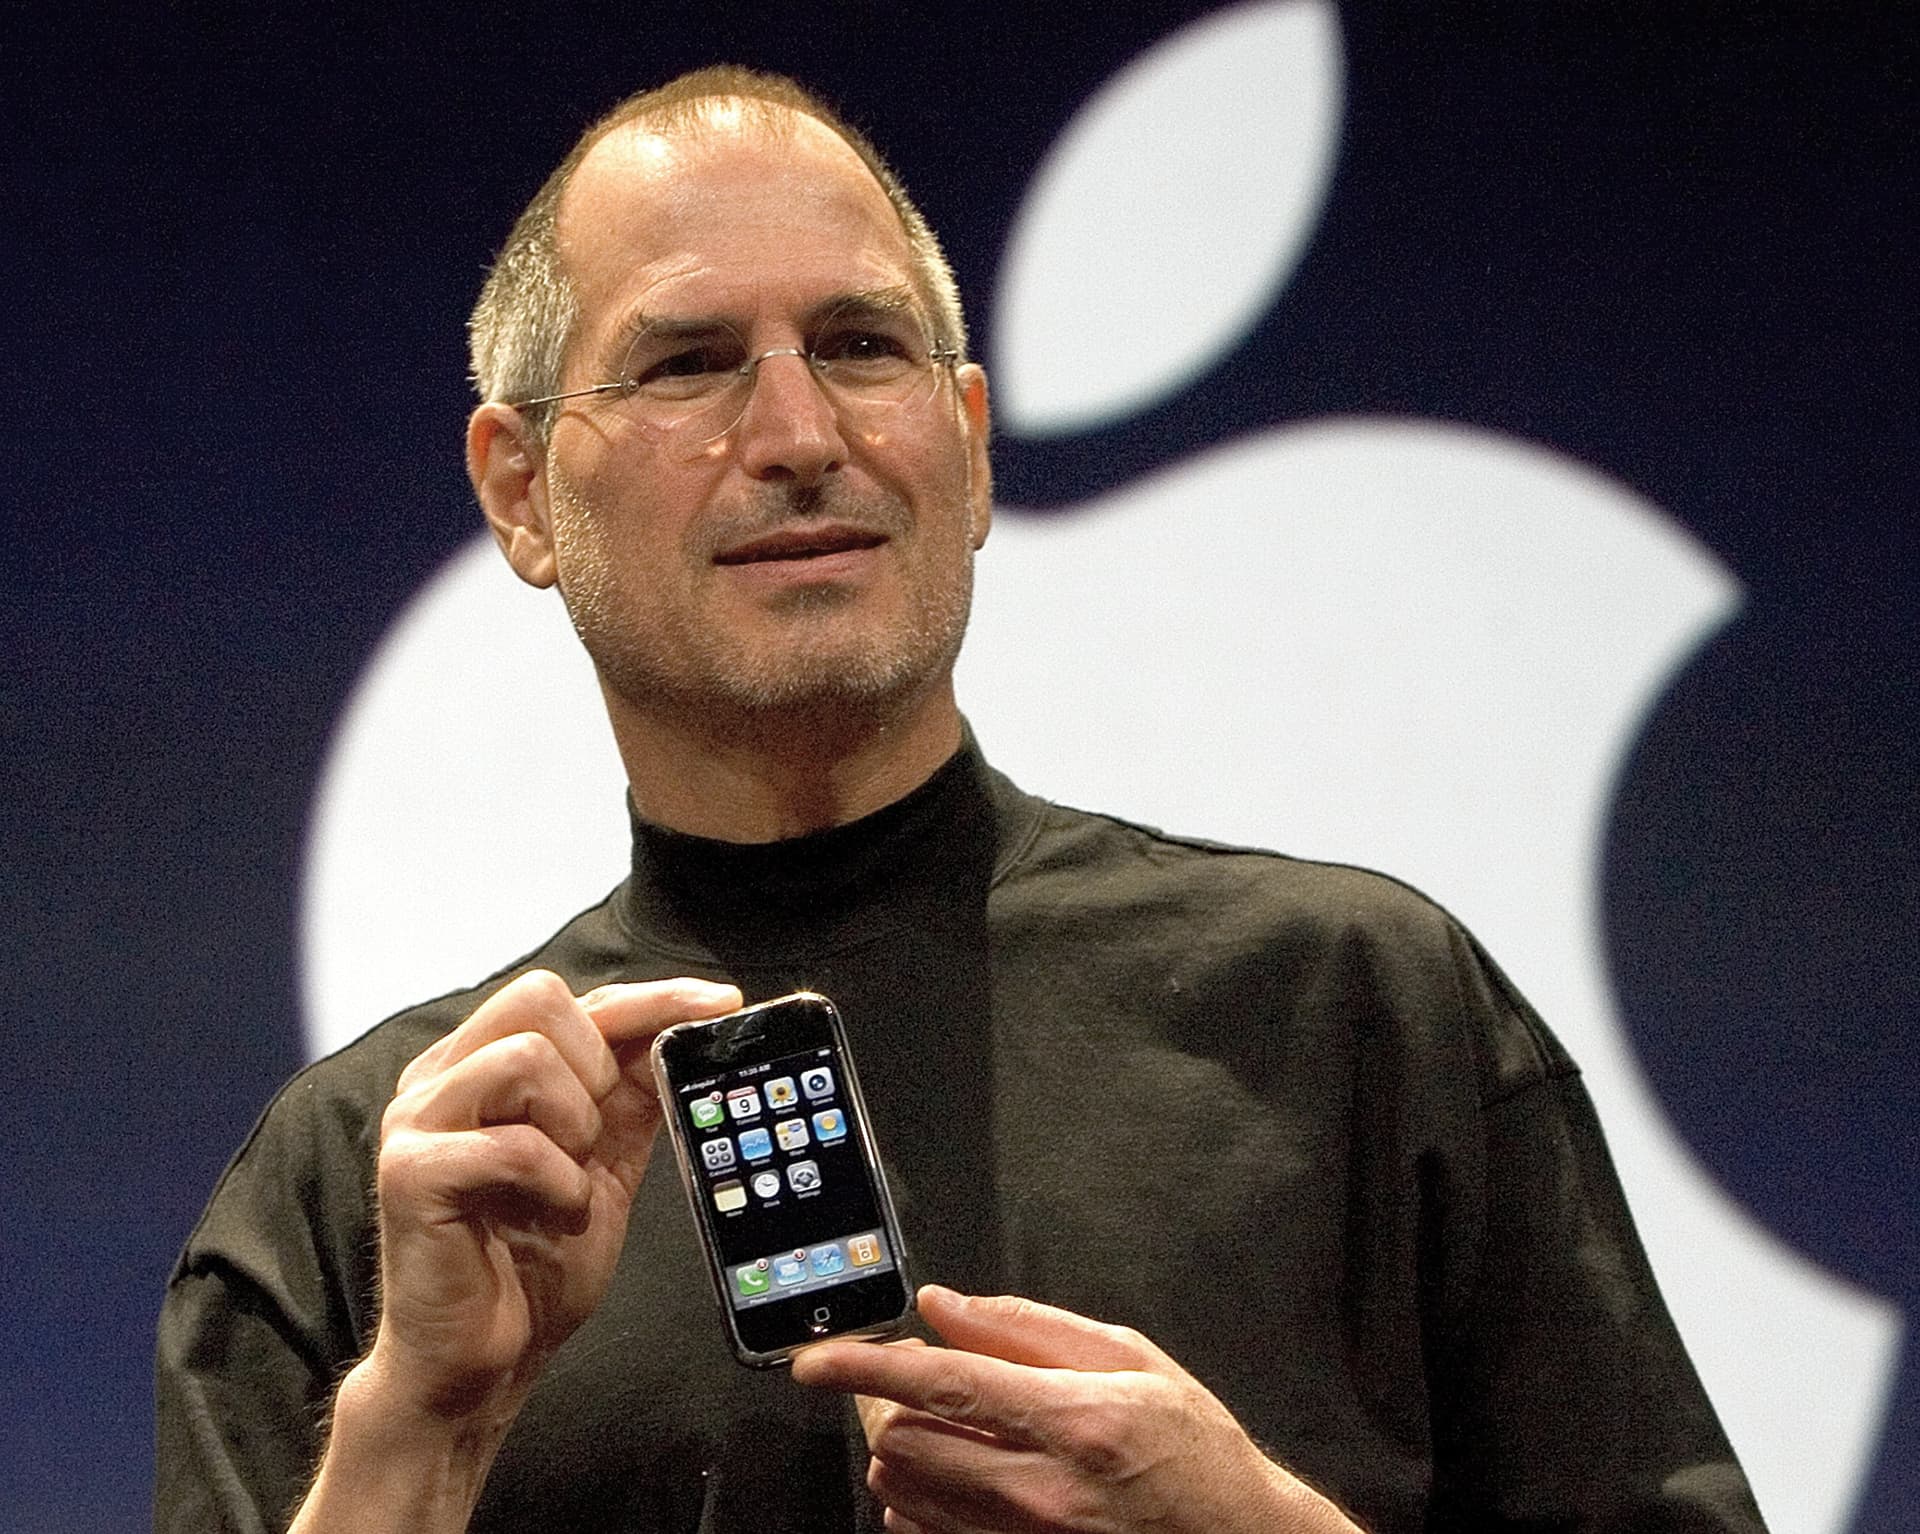 Detail Image Of Steve Jobs Nomer 4